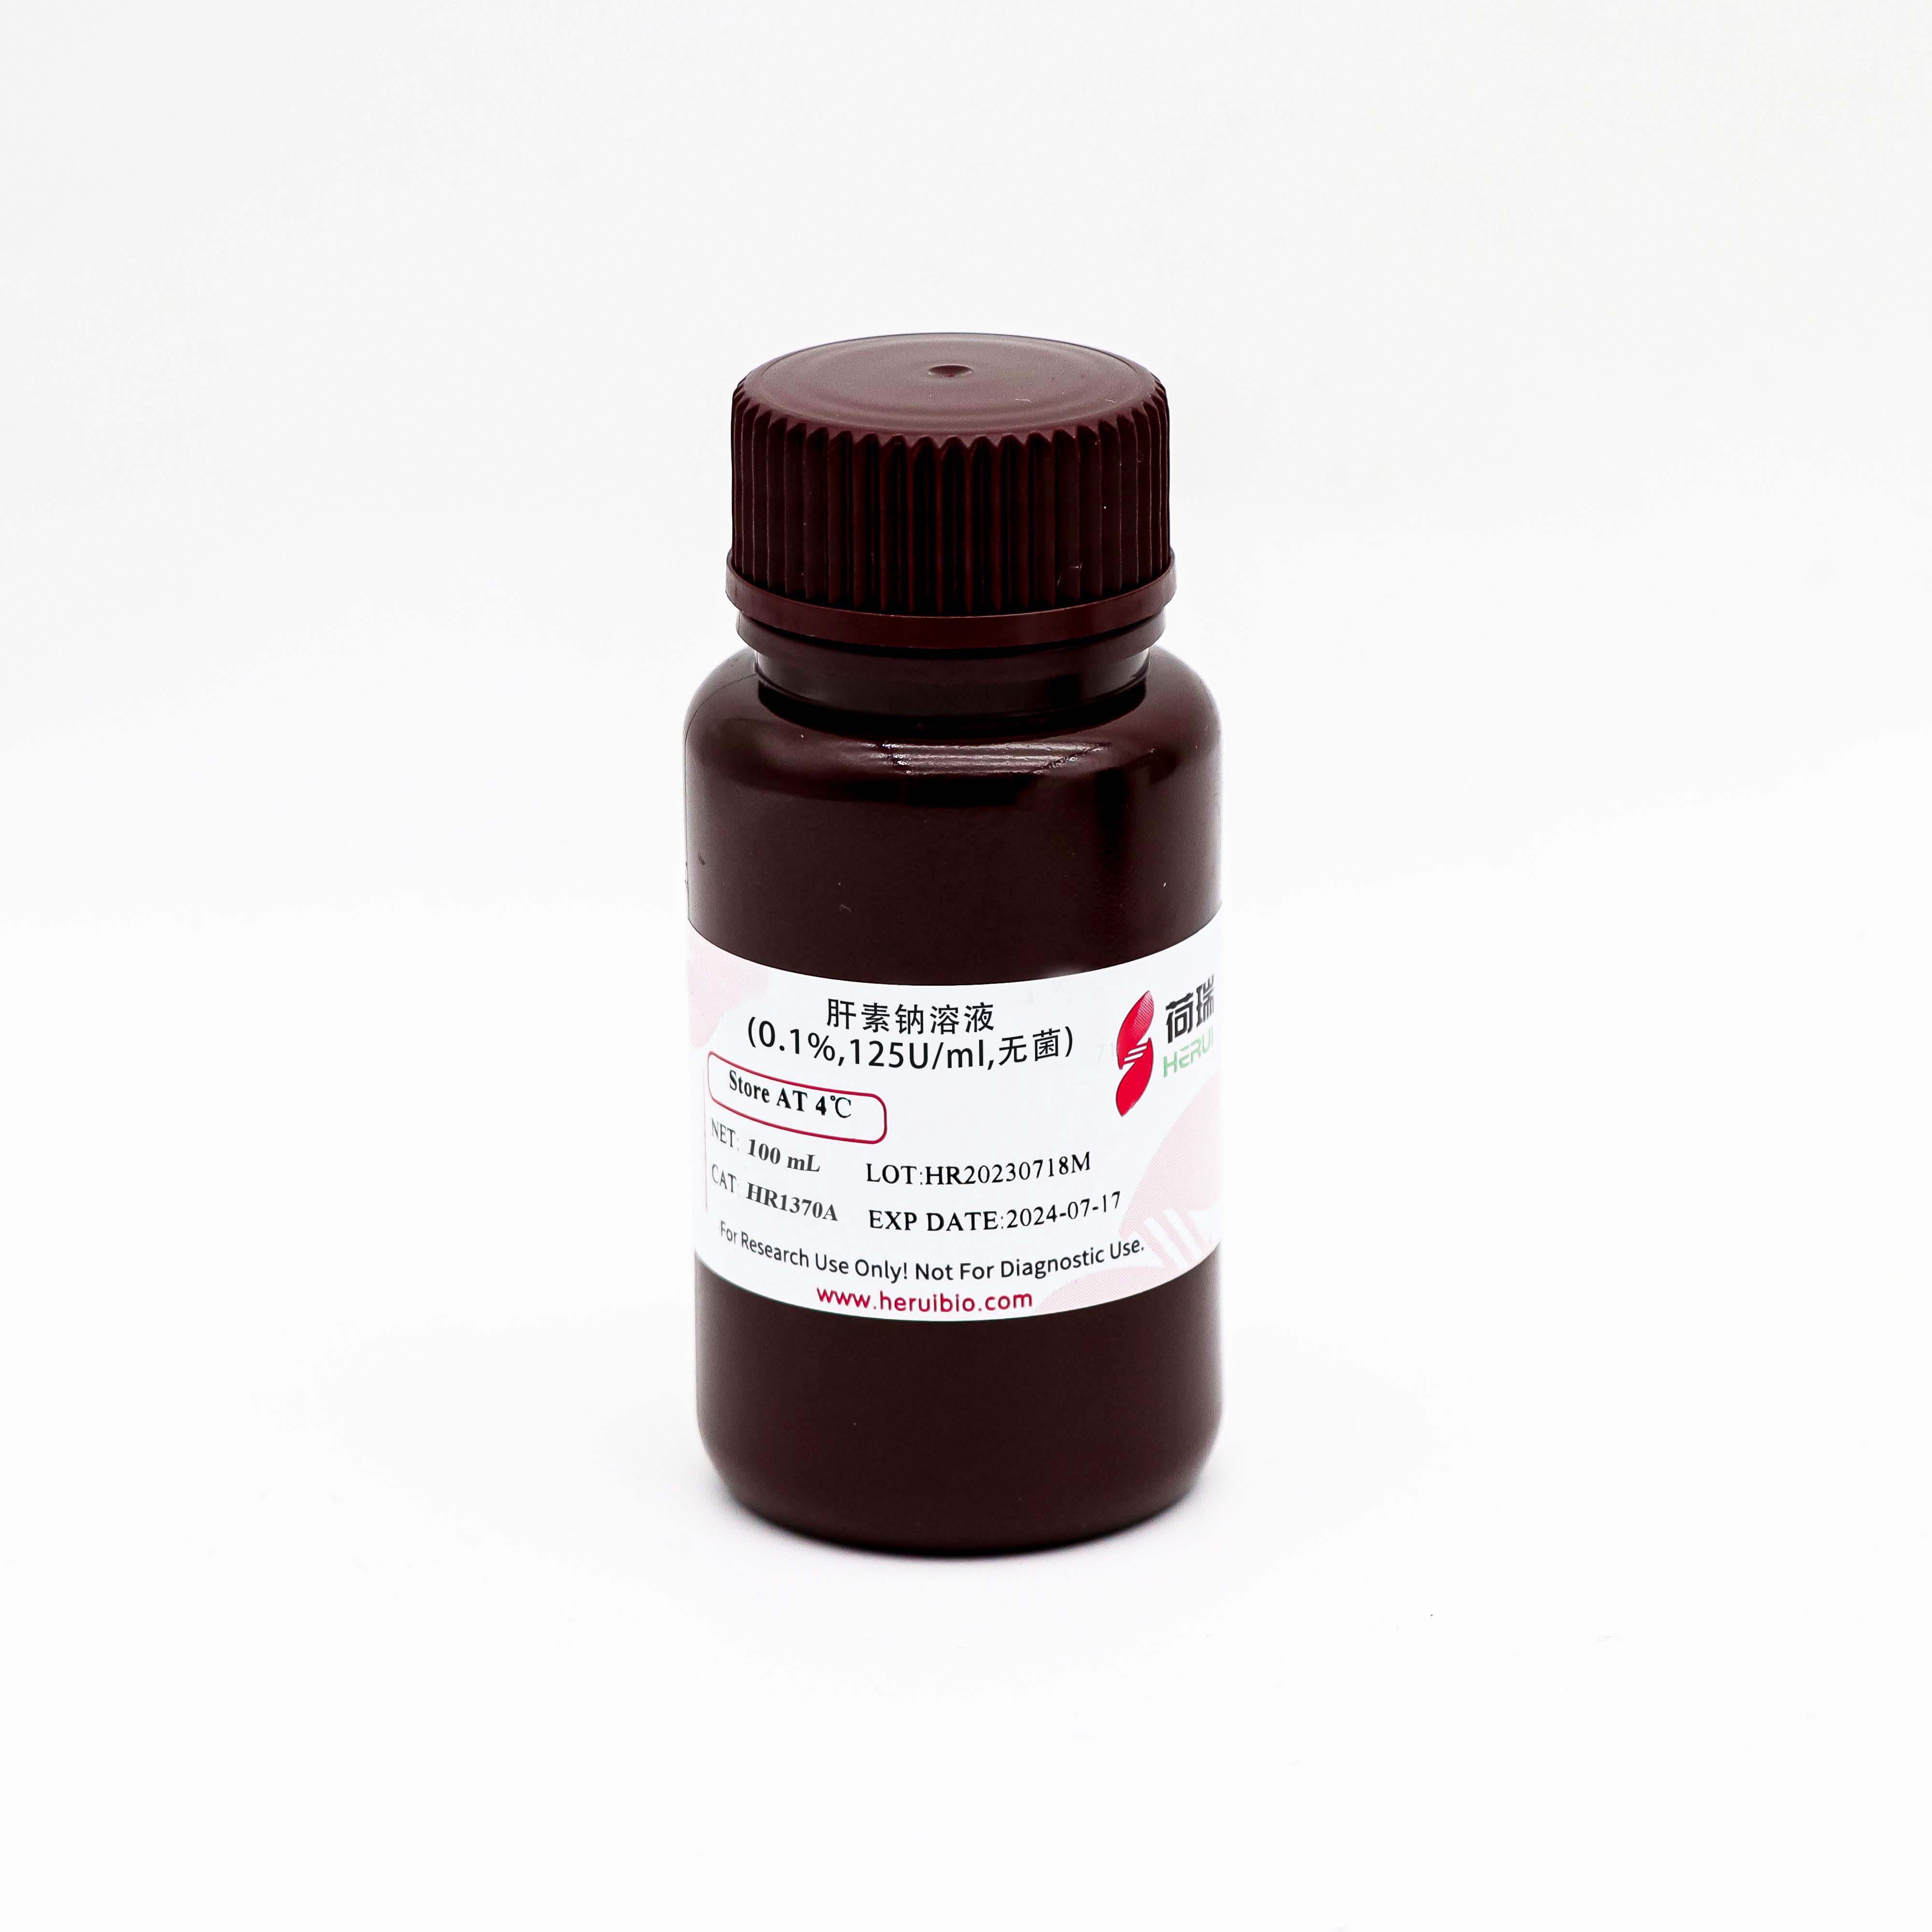 肝素钠溶液 (0.1%,125U/ml,无菌)